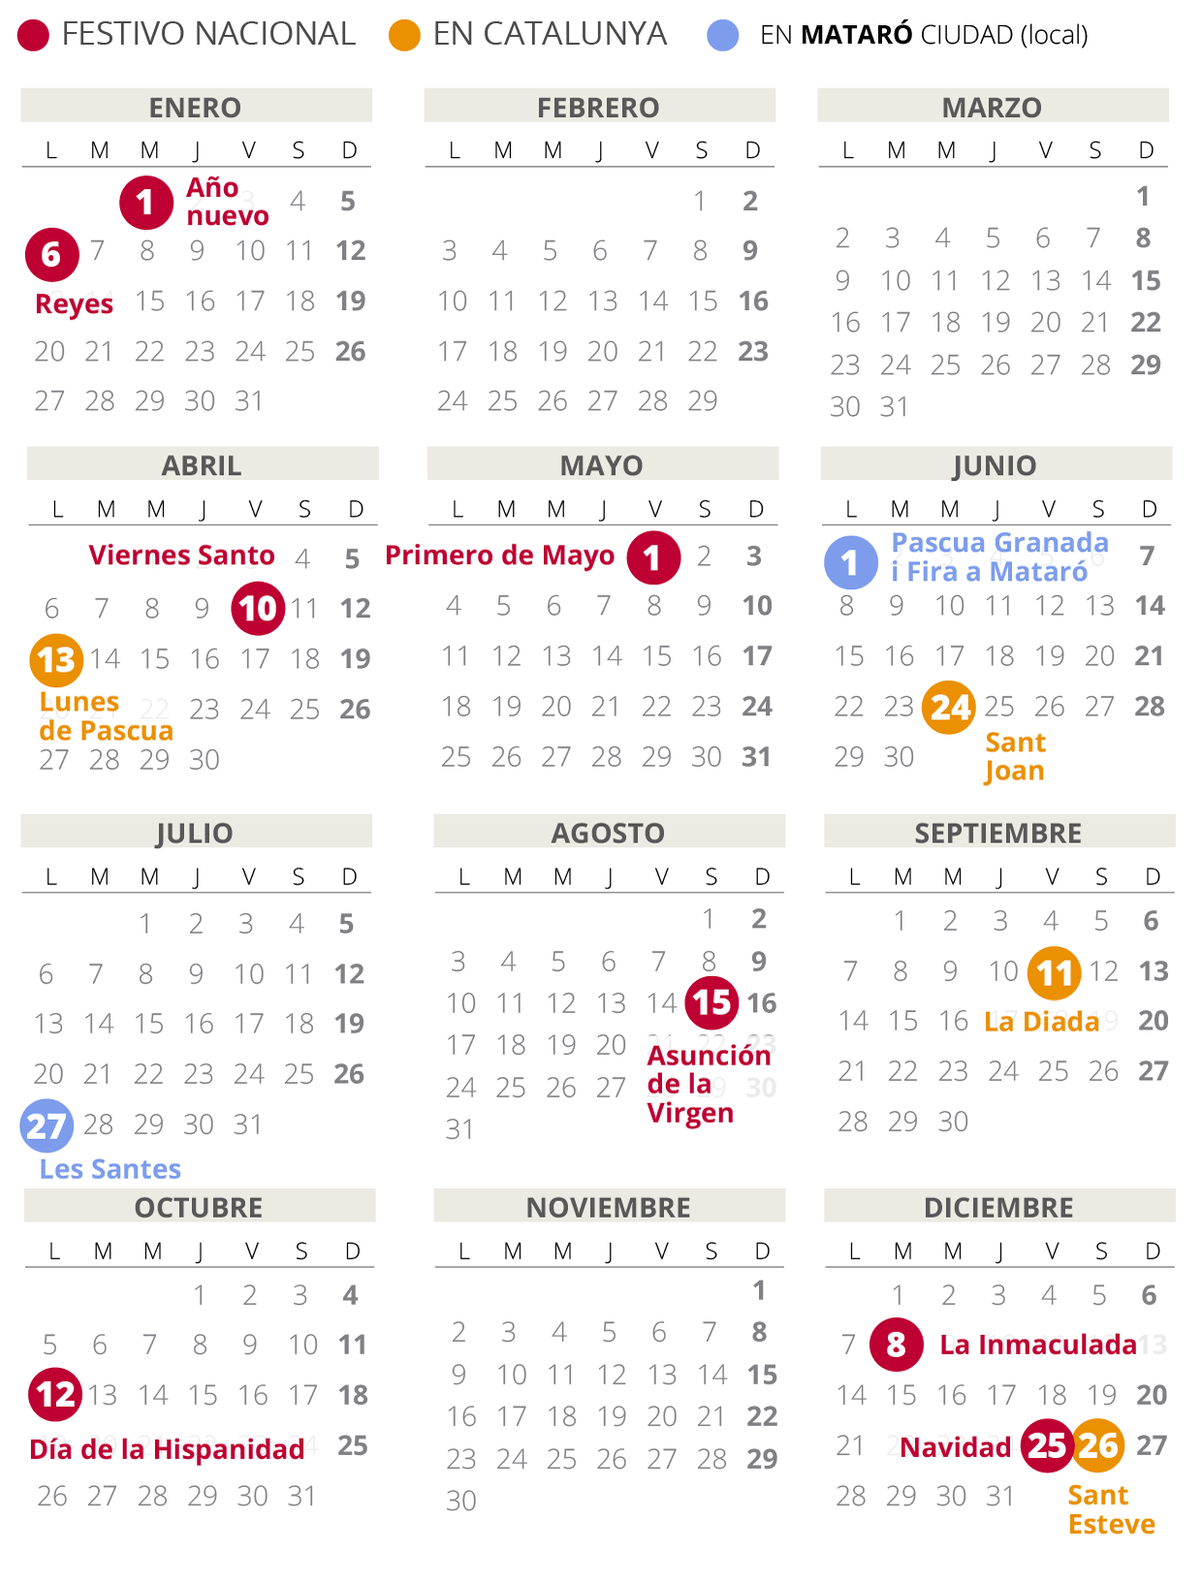 Calendario laboral de Mataró del 2020.